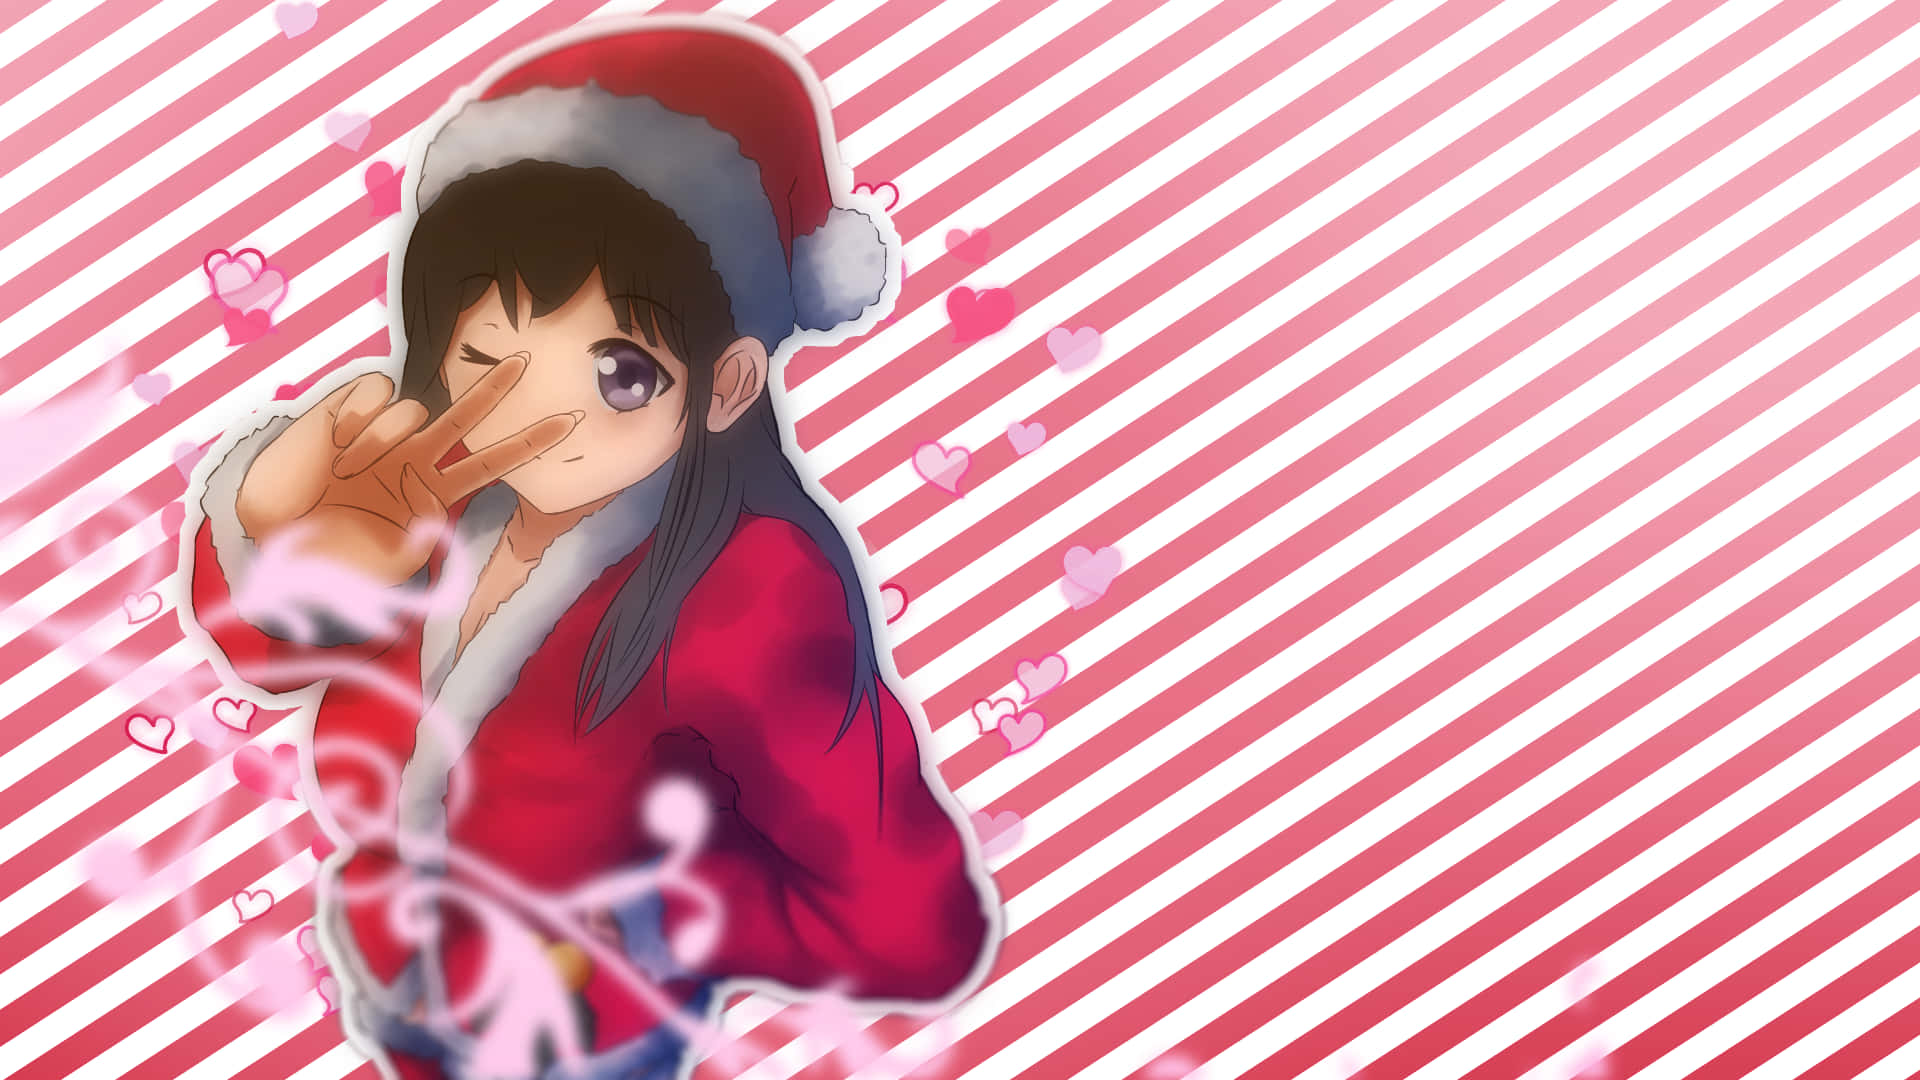 Feiernsie Die Ferienzeit Mit Einem Anime-weihnachten